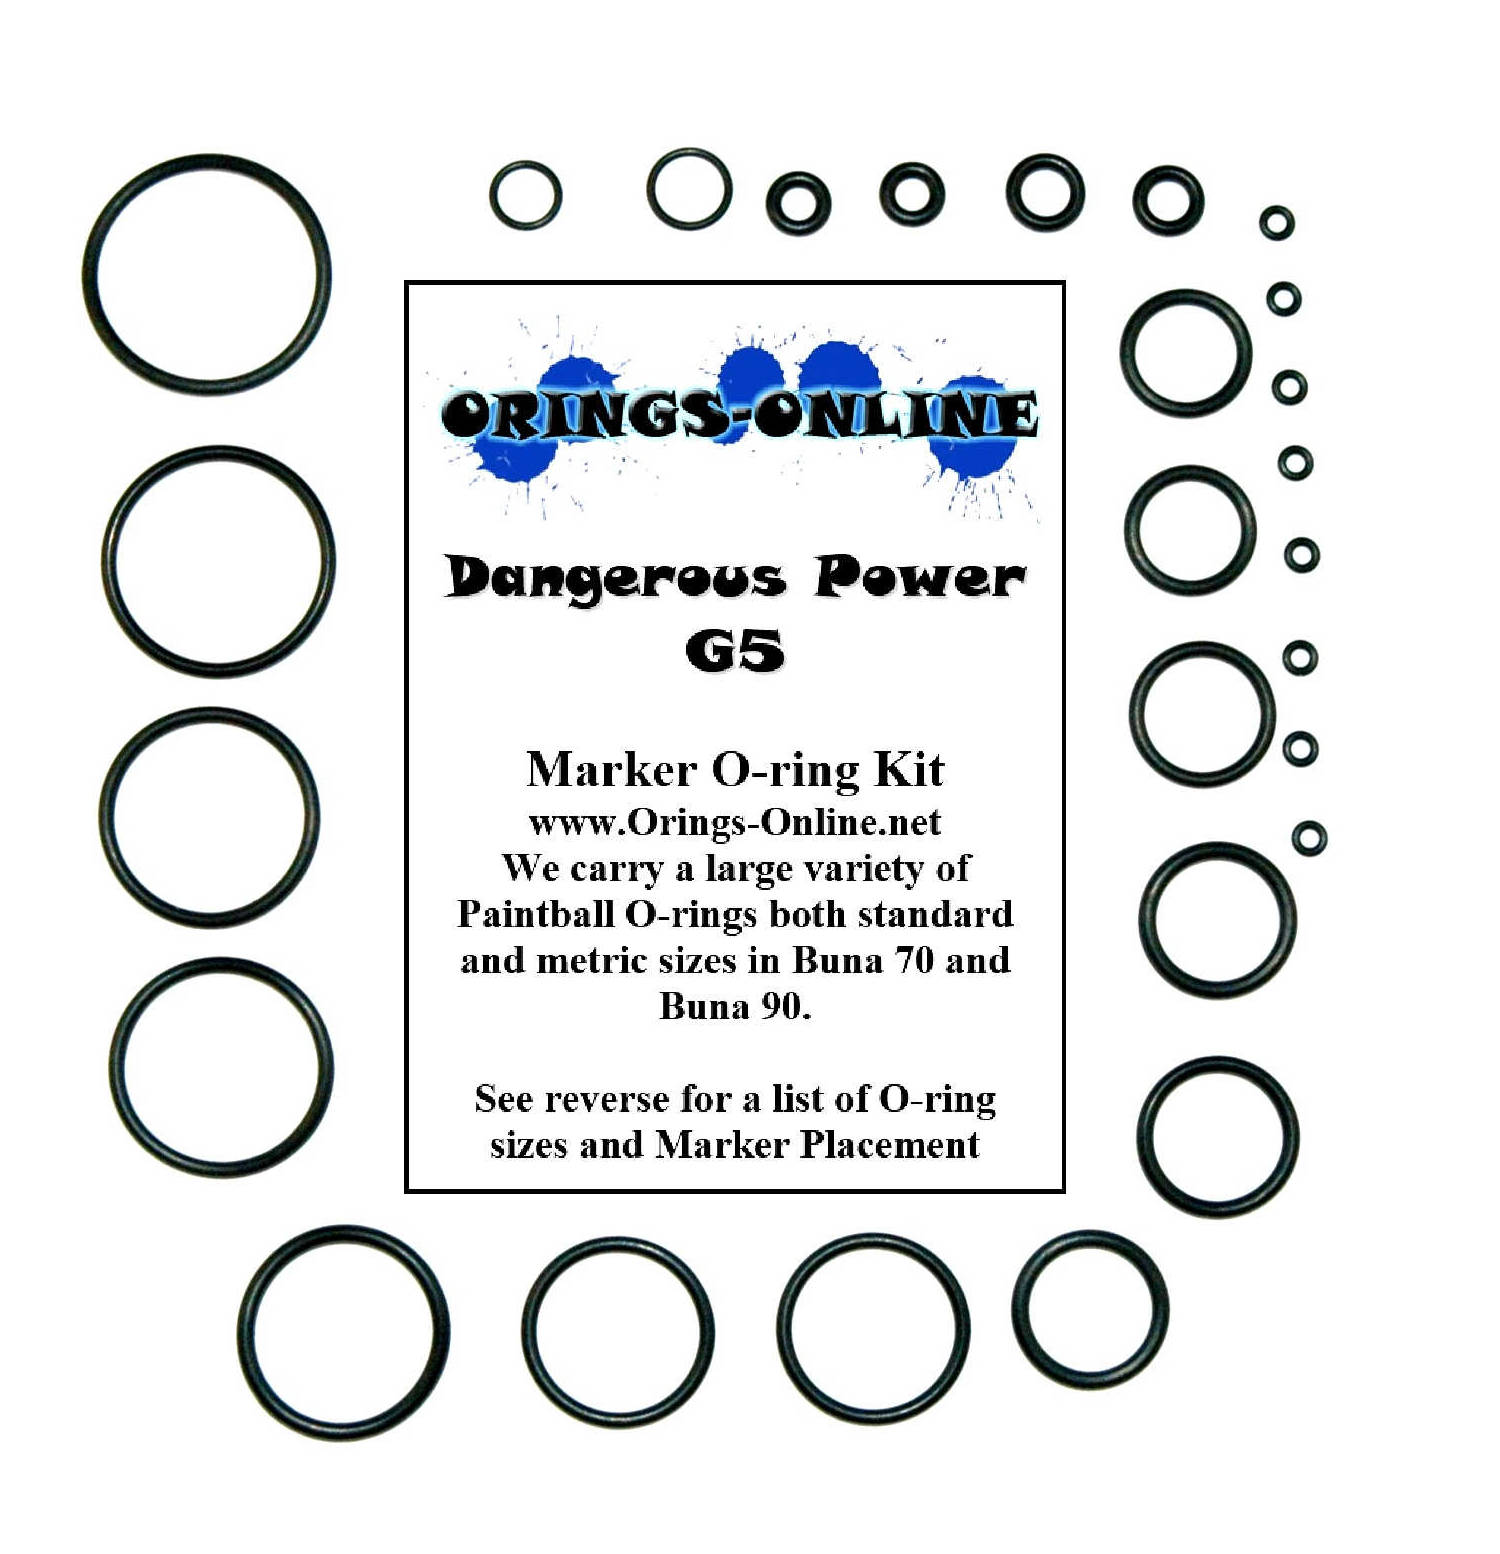 Dangerous Power G5 Marker O-ring Kit